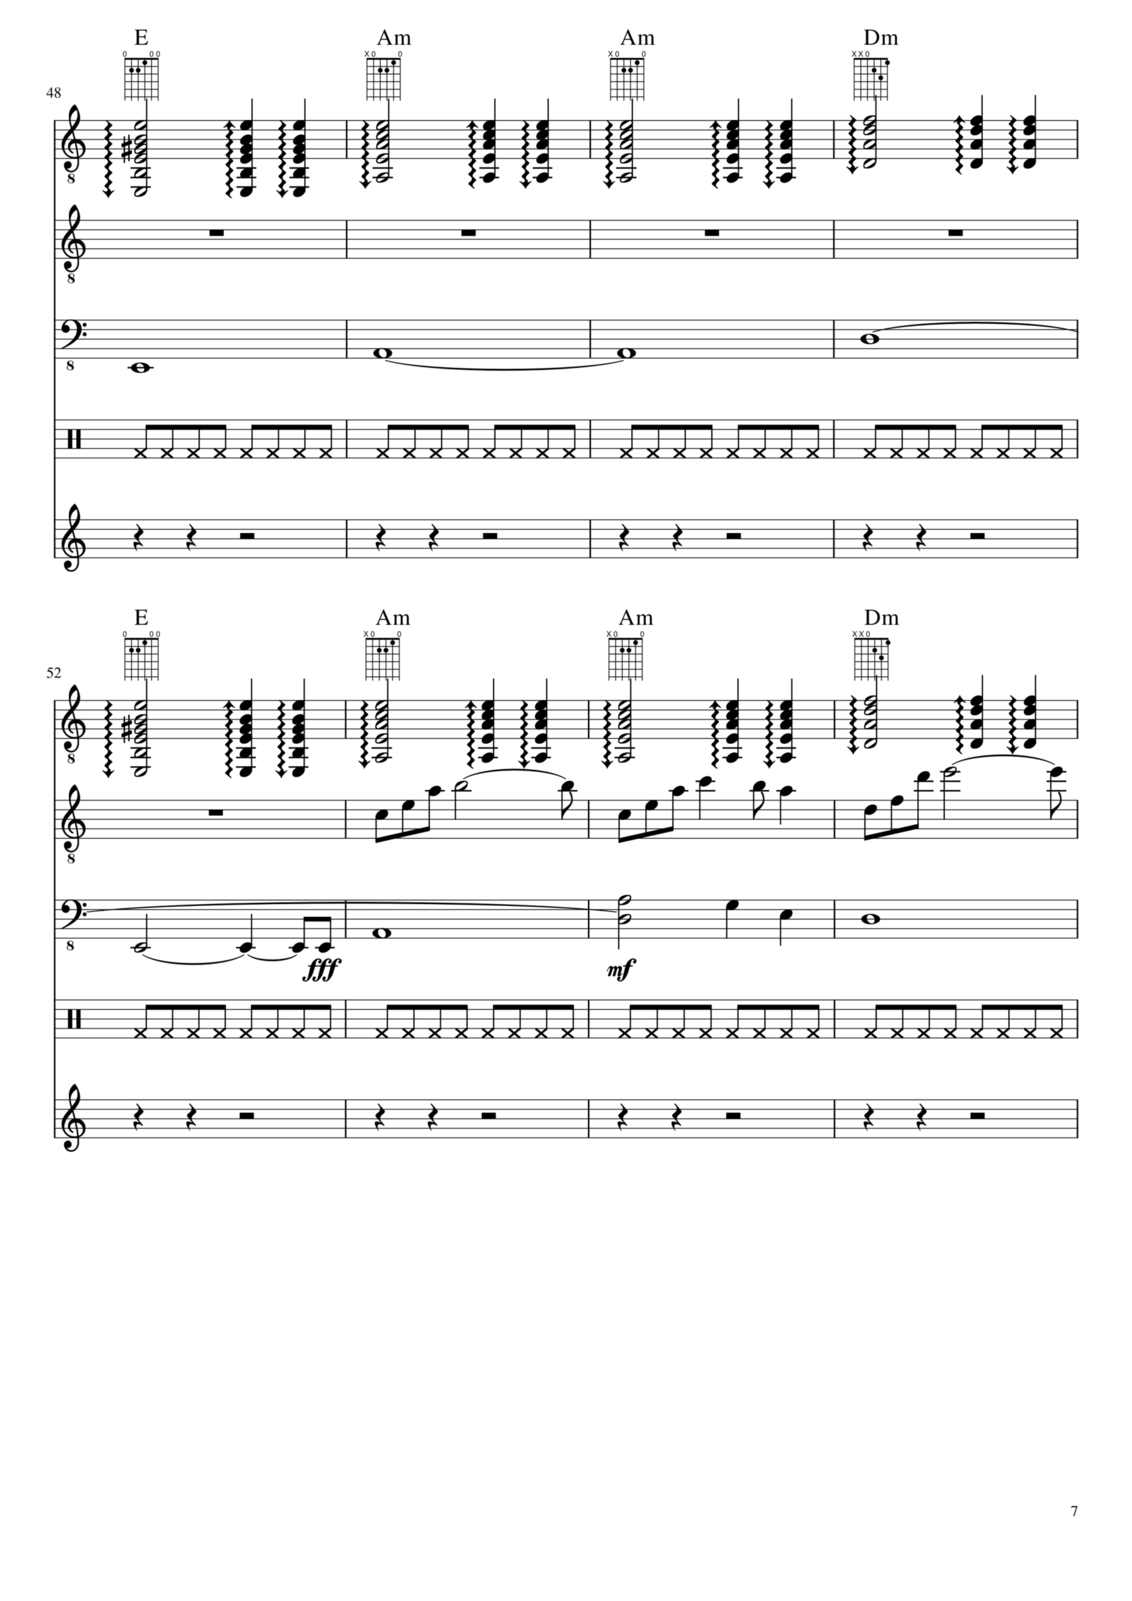 Prervannaya lyubov ili arbuznaya korka slide, Image 7